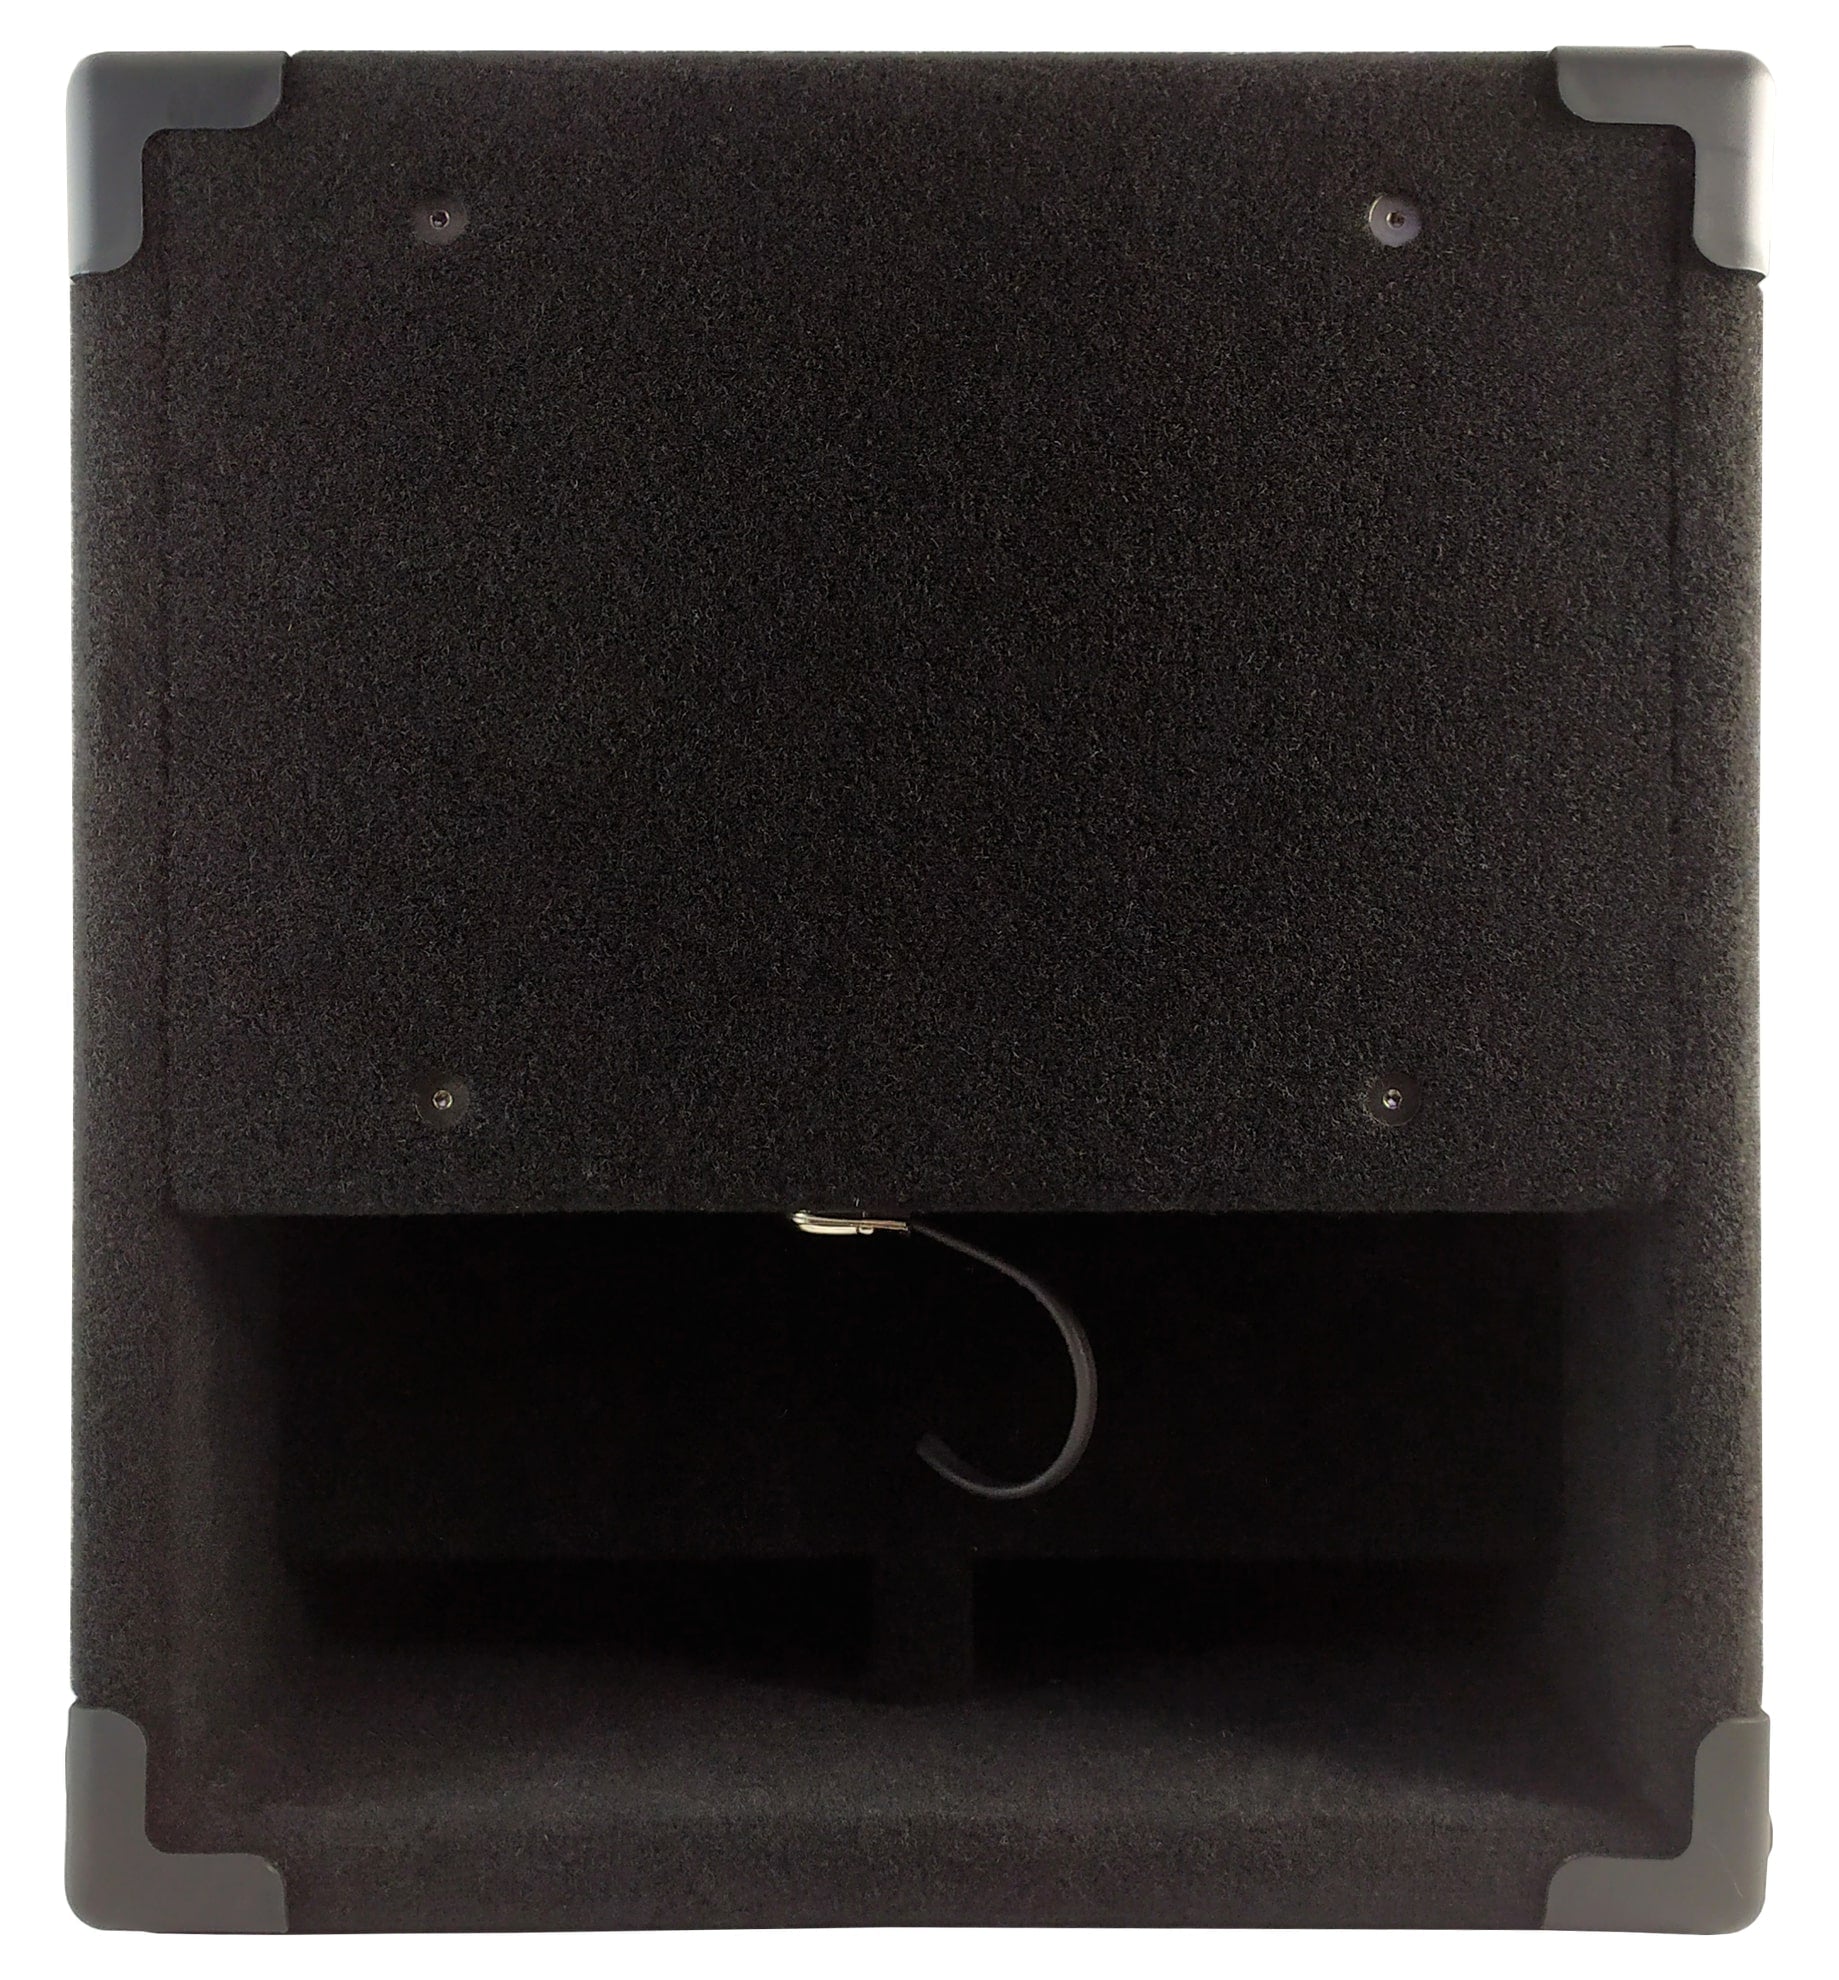 Markbass 1x12 300 Watt Bass Combo Amplifier MINI-CMD121P-IV